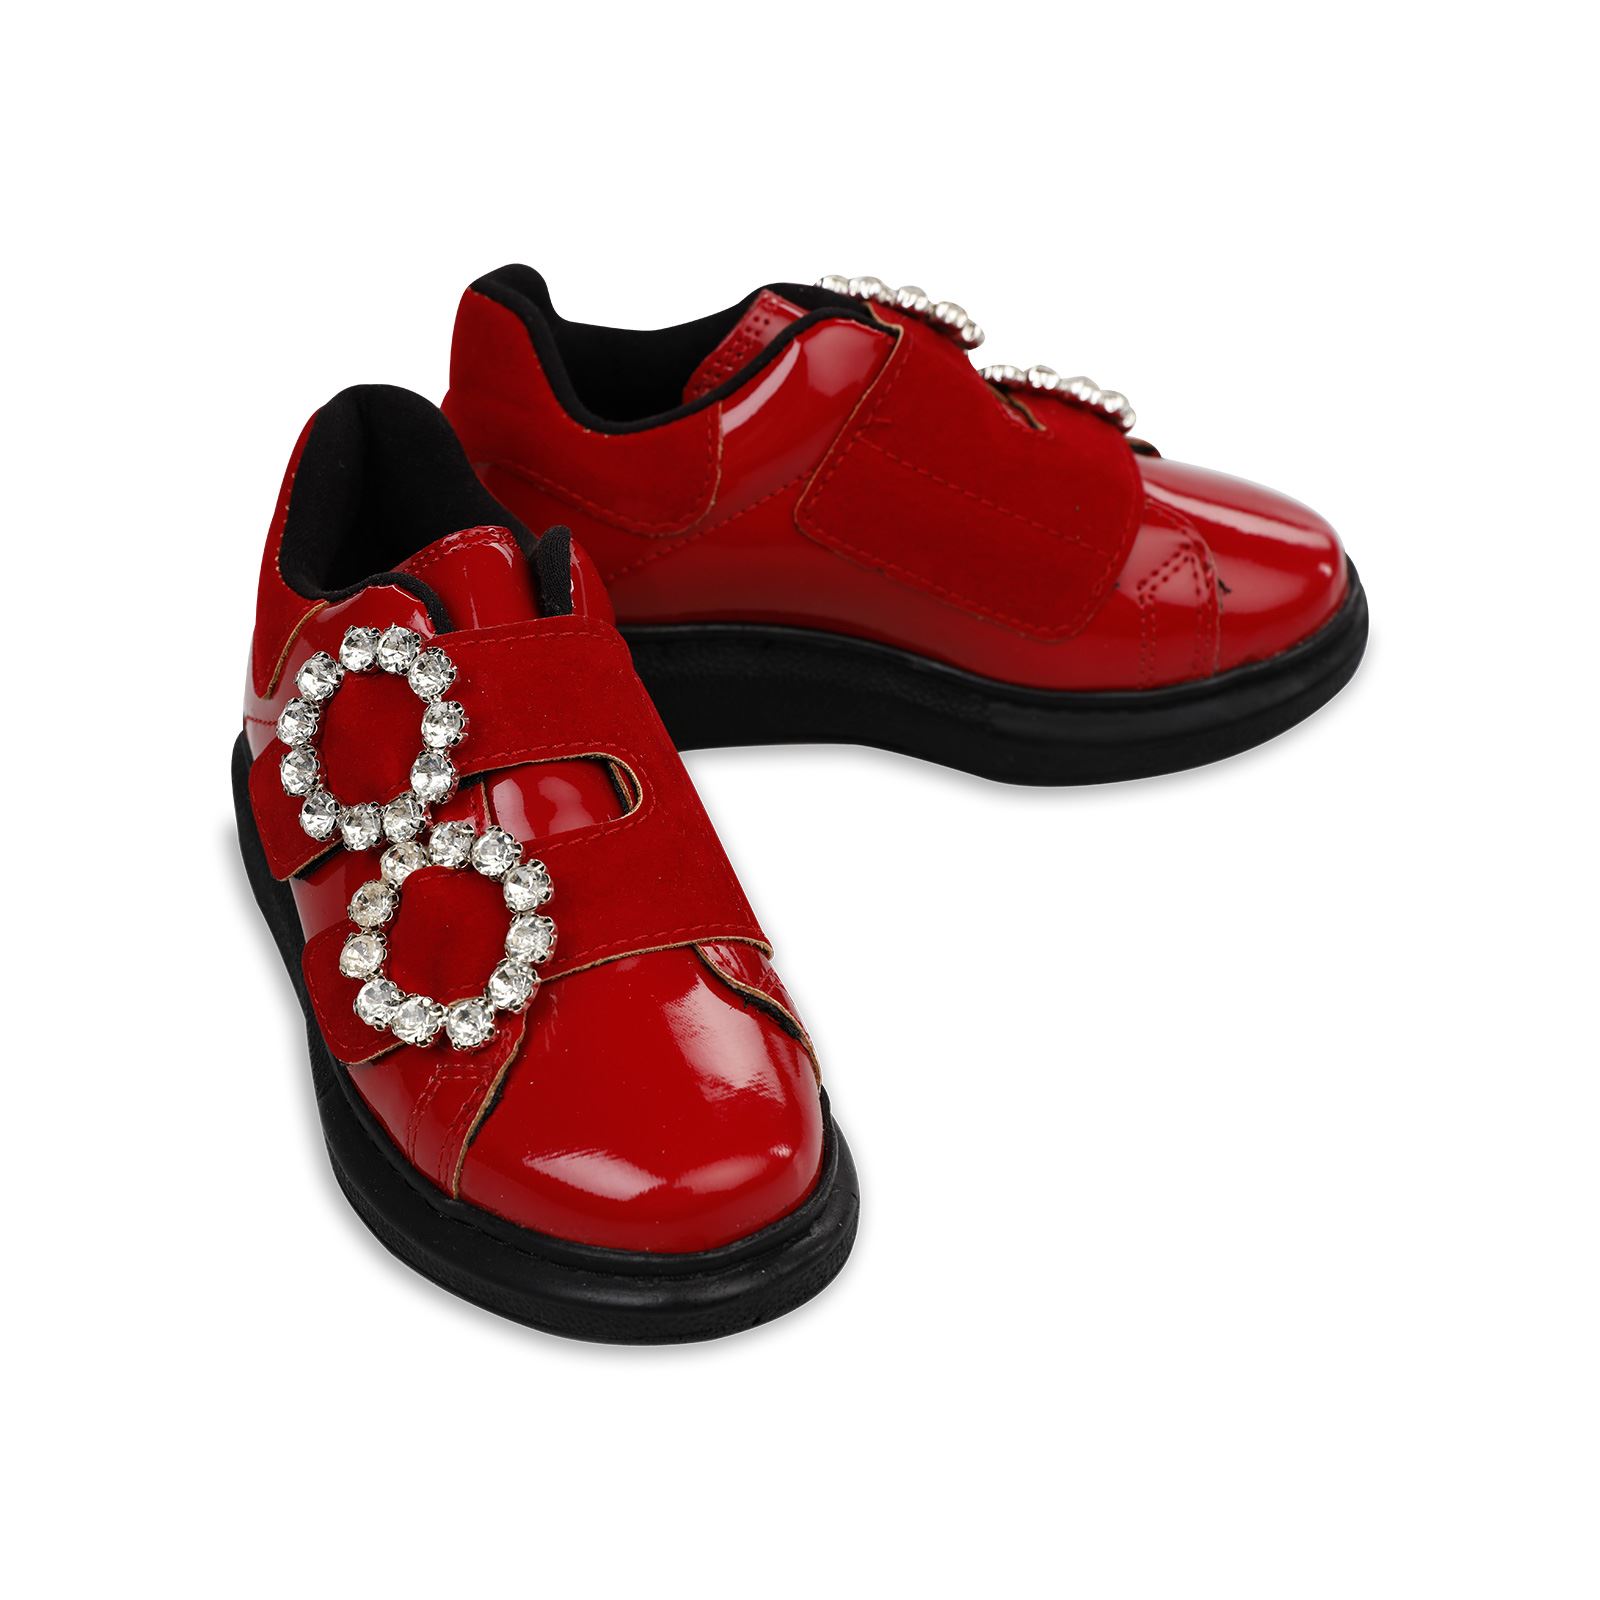 Harli Kız Çocuk Spor Ayakkabı 31-35 Numara Kırmızı